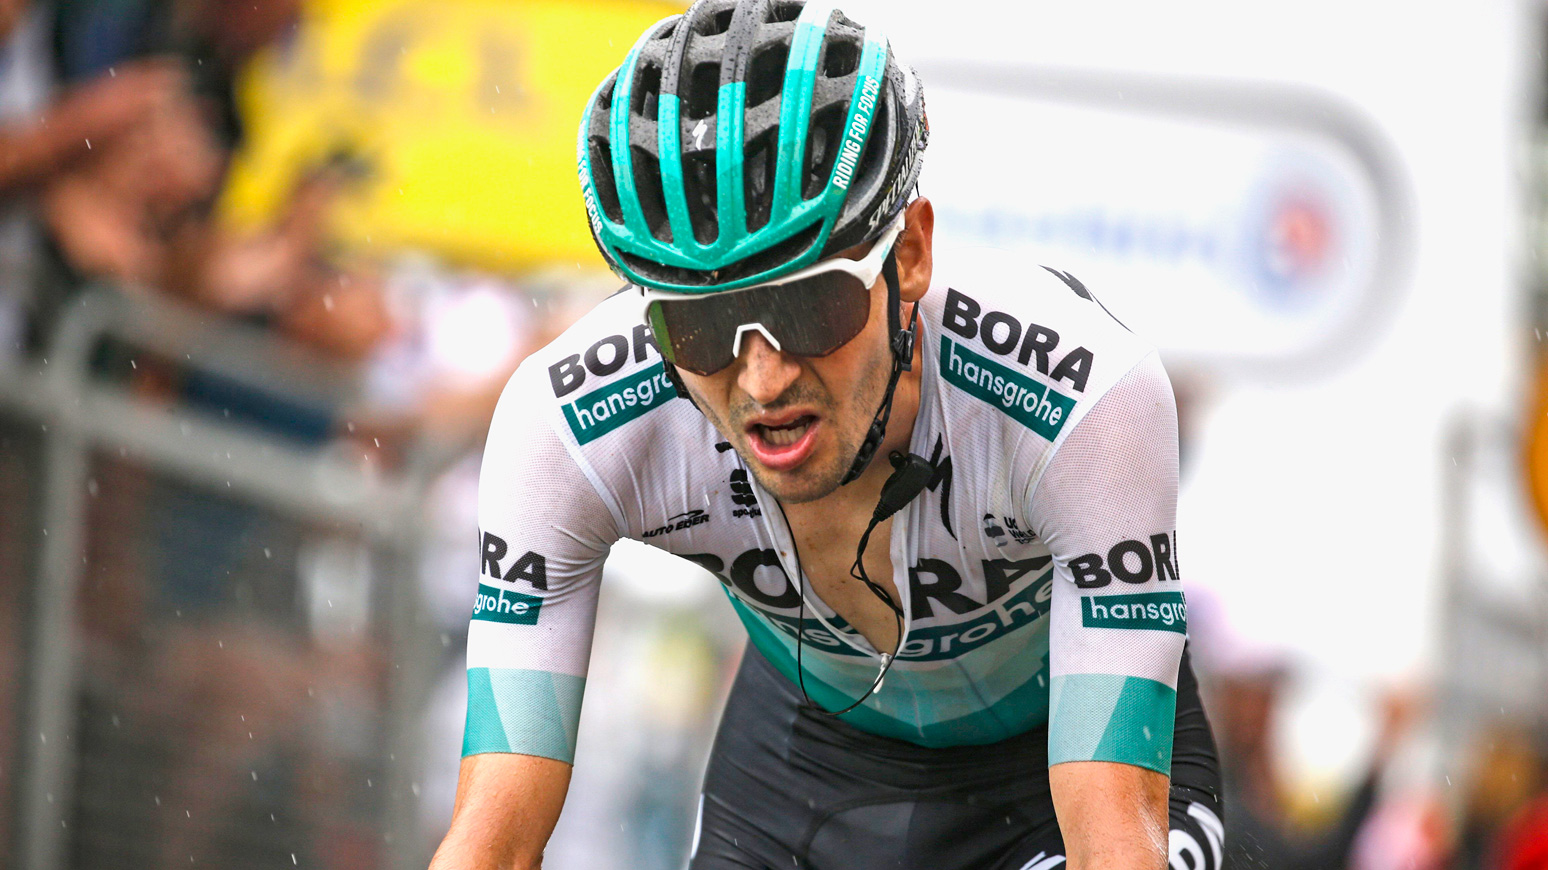 Emanuel-Buchmann-Tour-de-France-2019